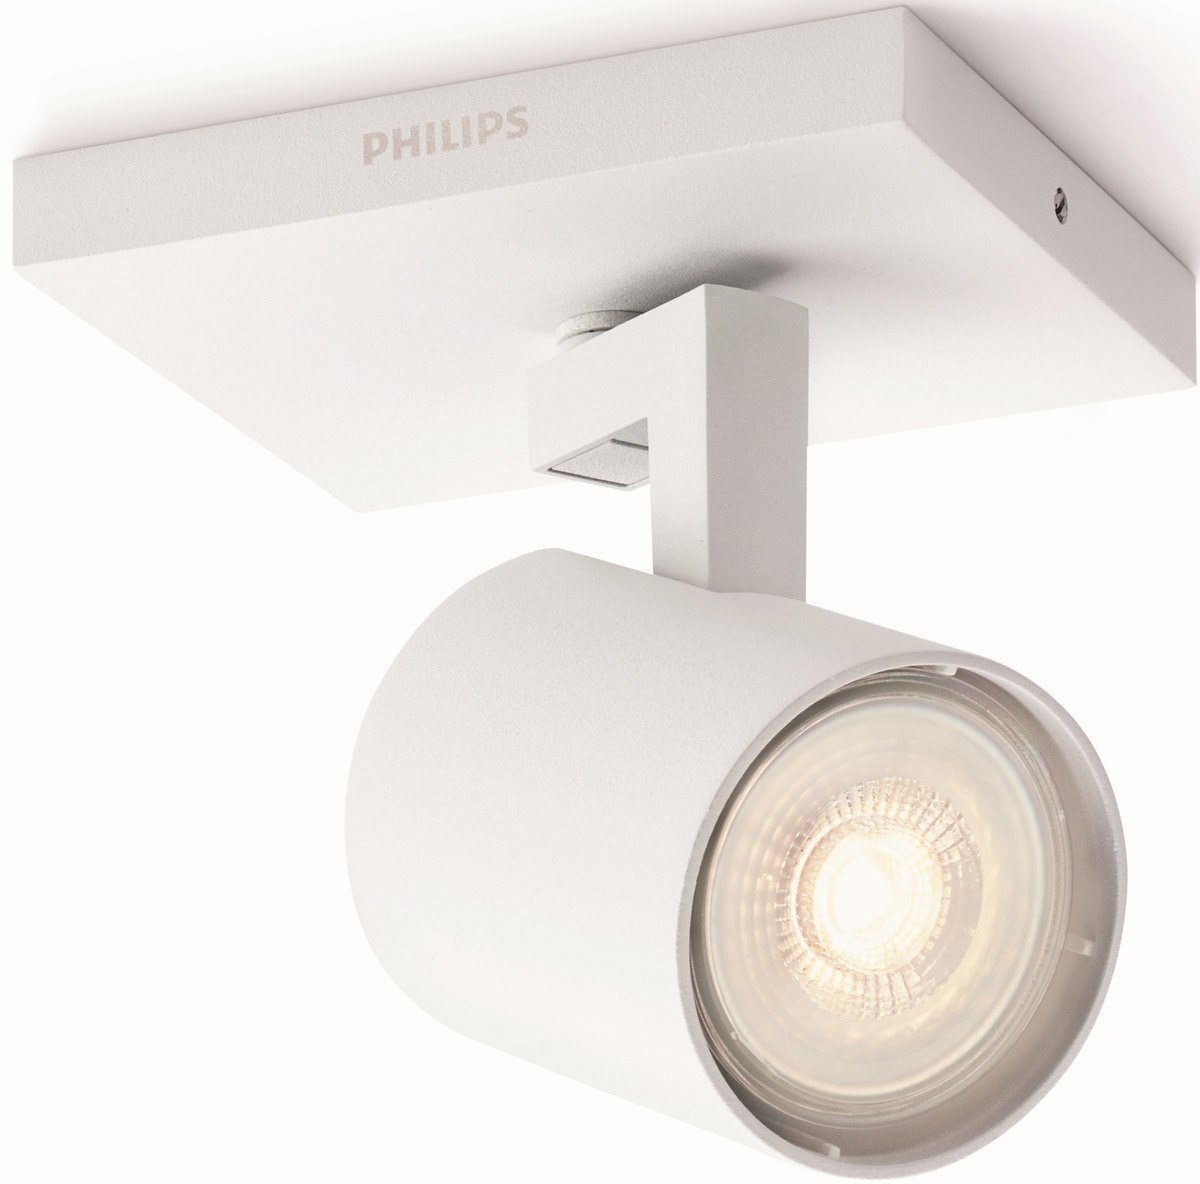 Philips Deckenspot Runner, LED wechselbar, Warmweiß, myLiving LED Spot 1flg.  230lm, Weiß, Deckenstrahler